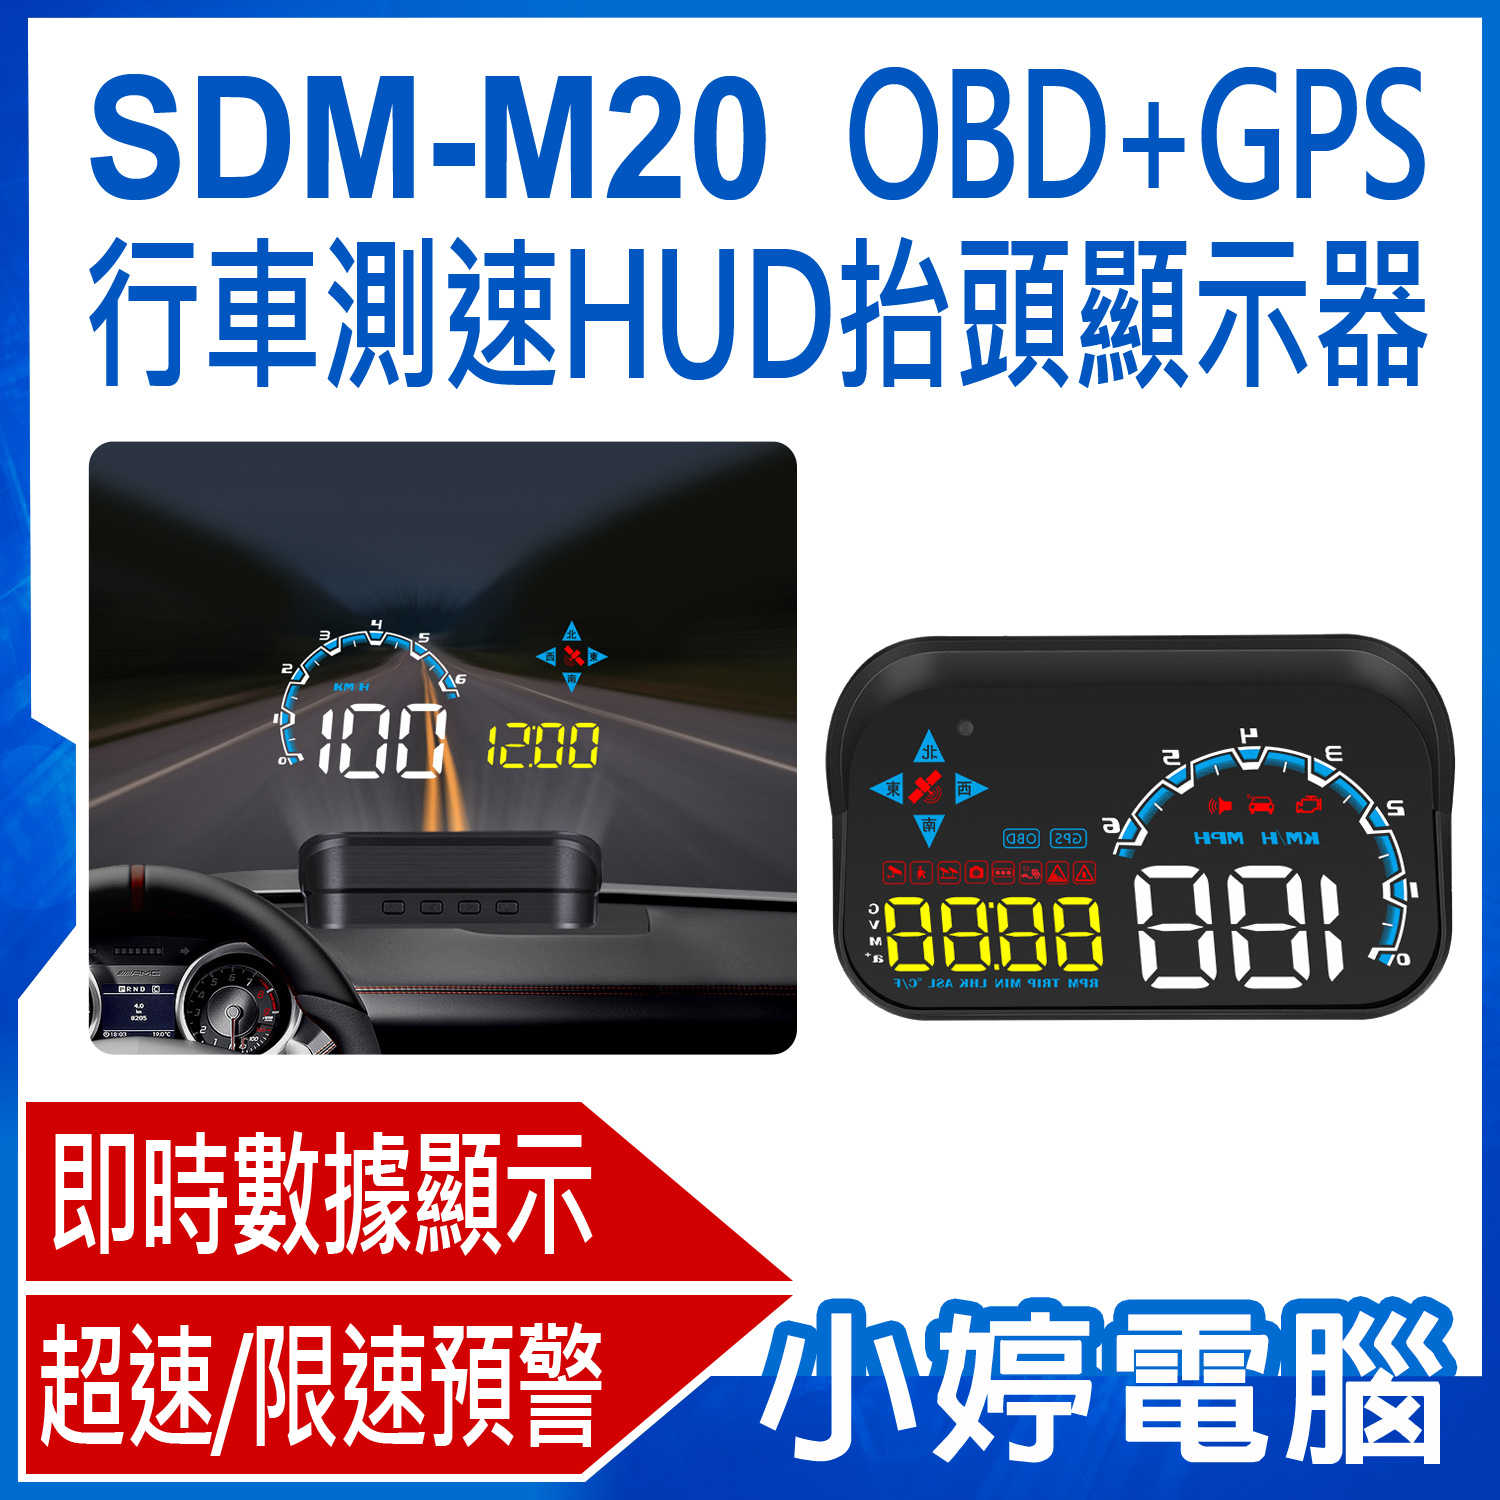 【小婷電腦】SDM-M20 OBD+GPS行車測速HUD抬頭顯示器 即時數據 超速/限速預警 GPS定位